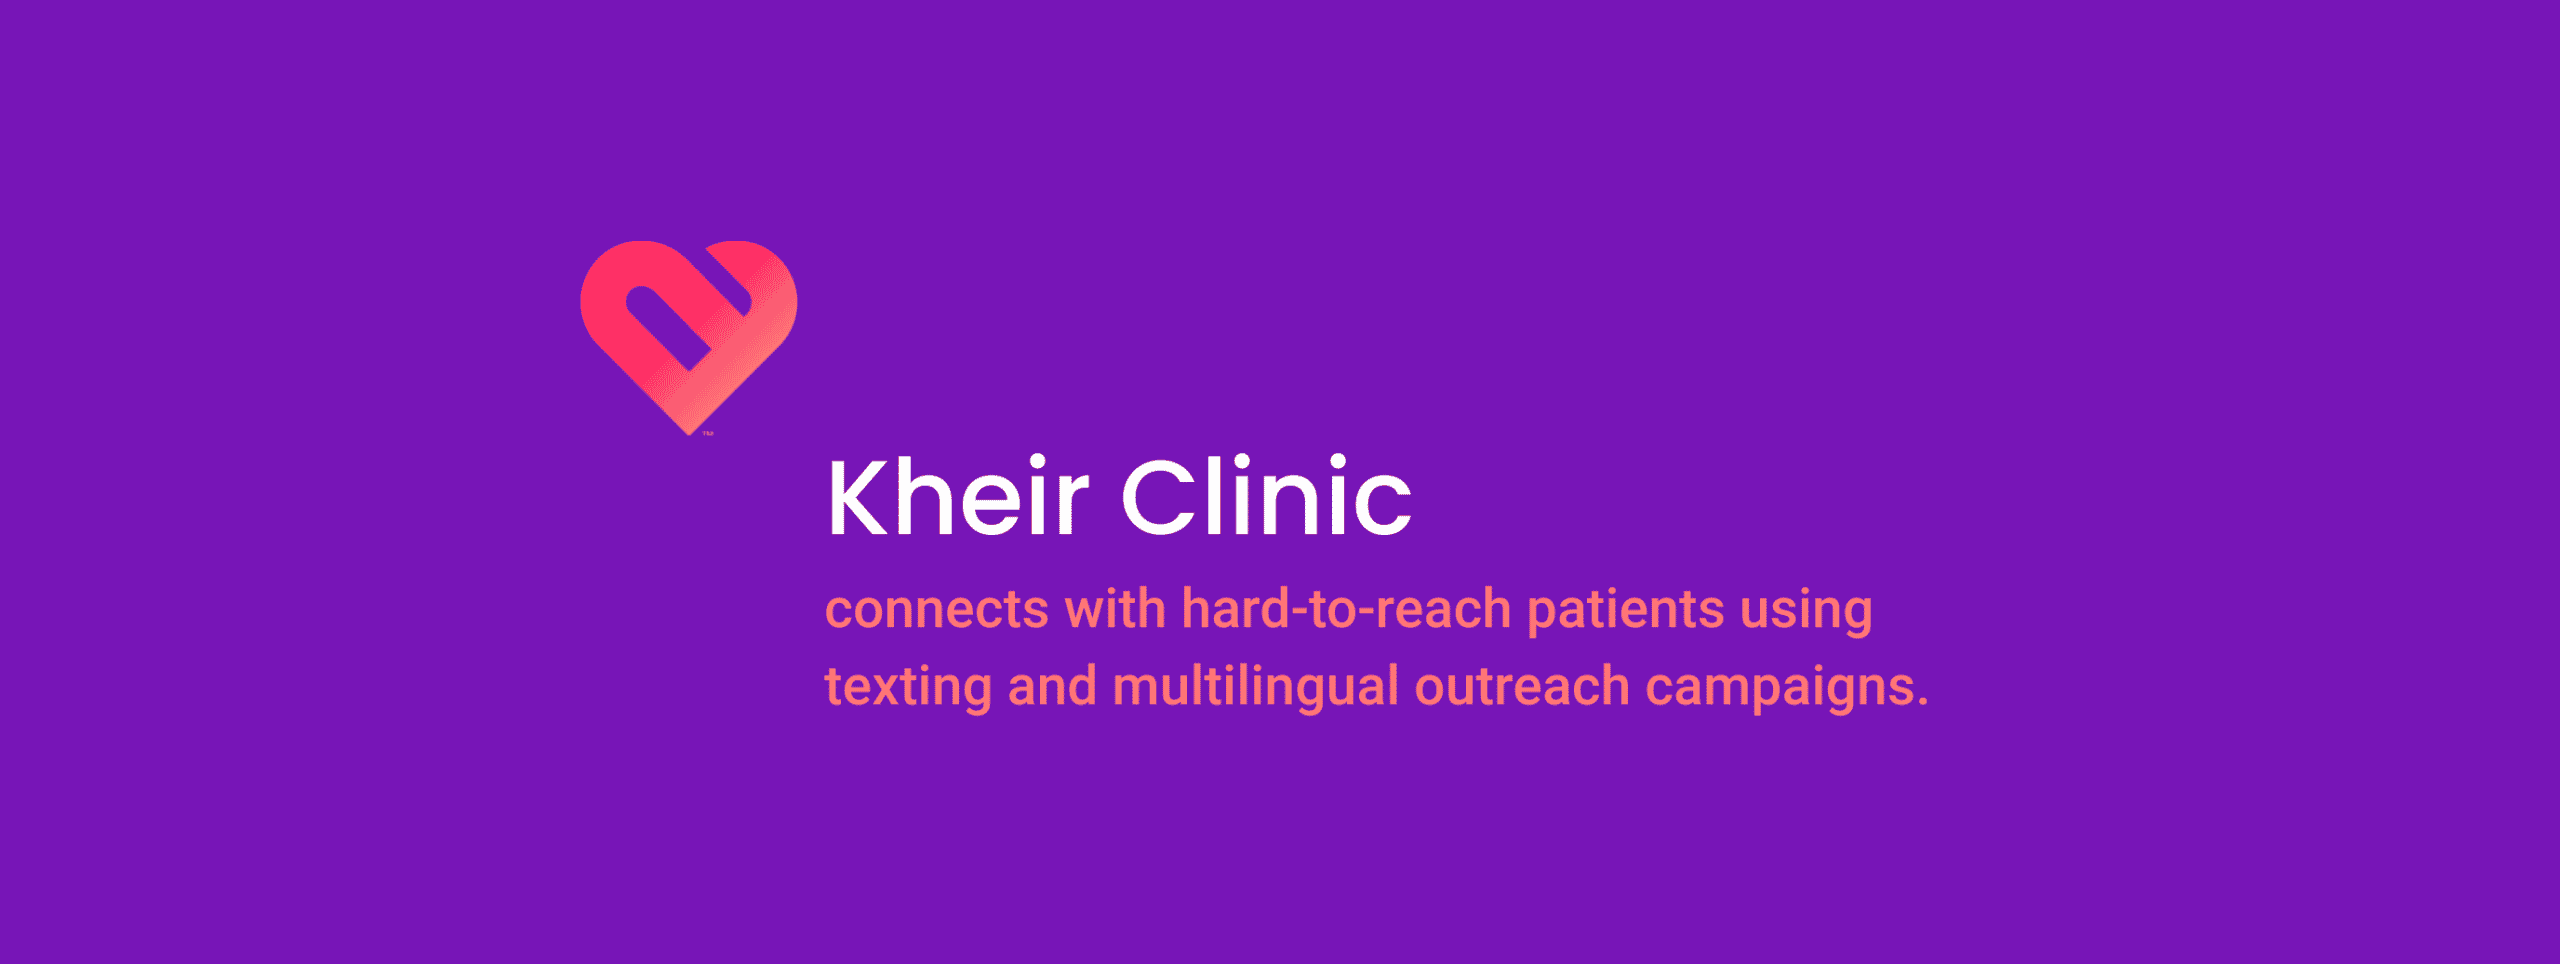 Kheir Clinic header